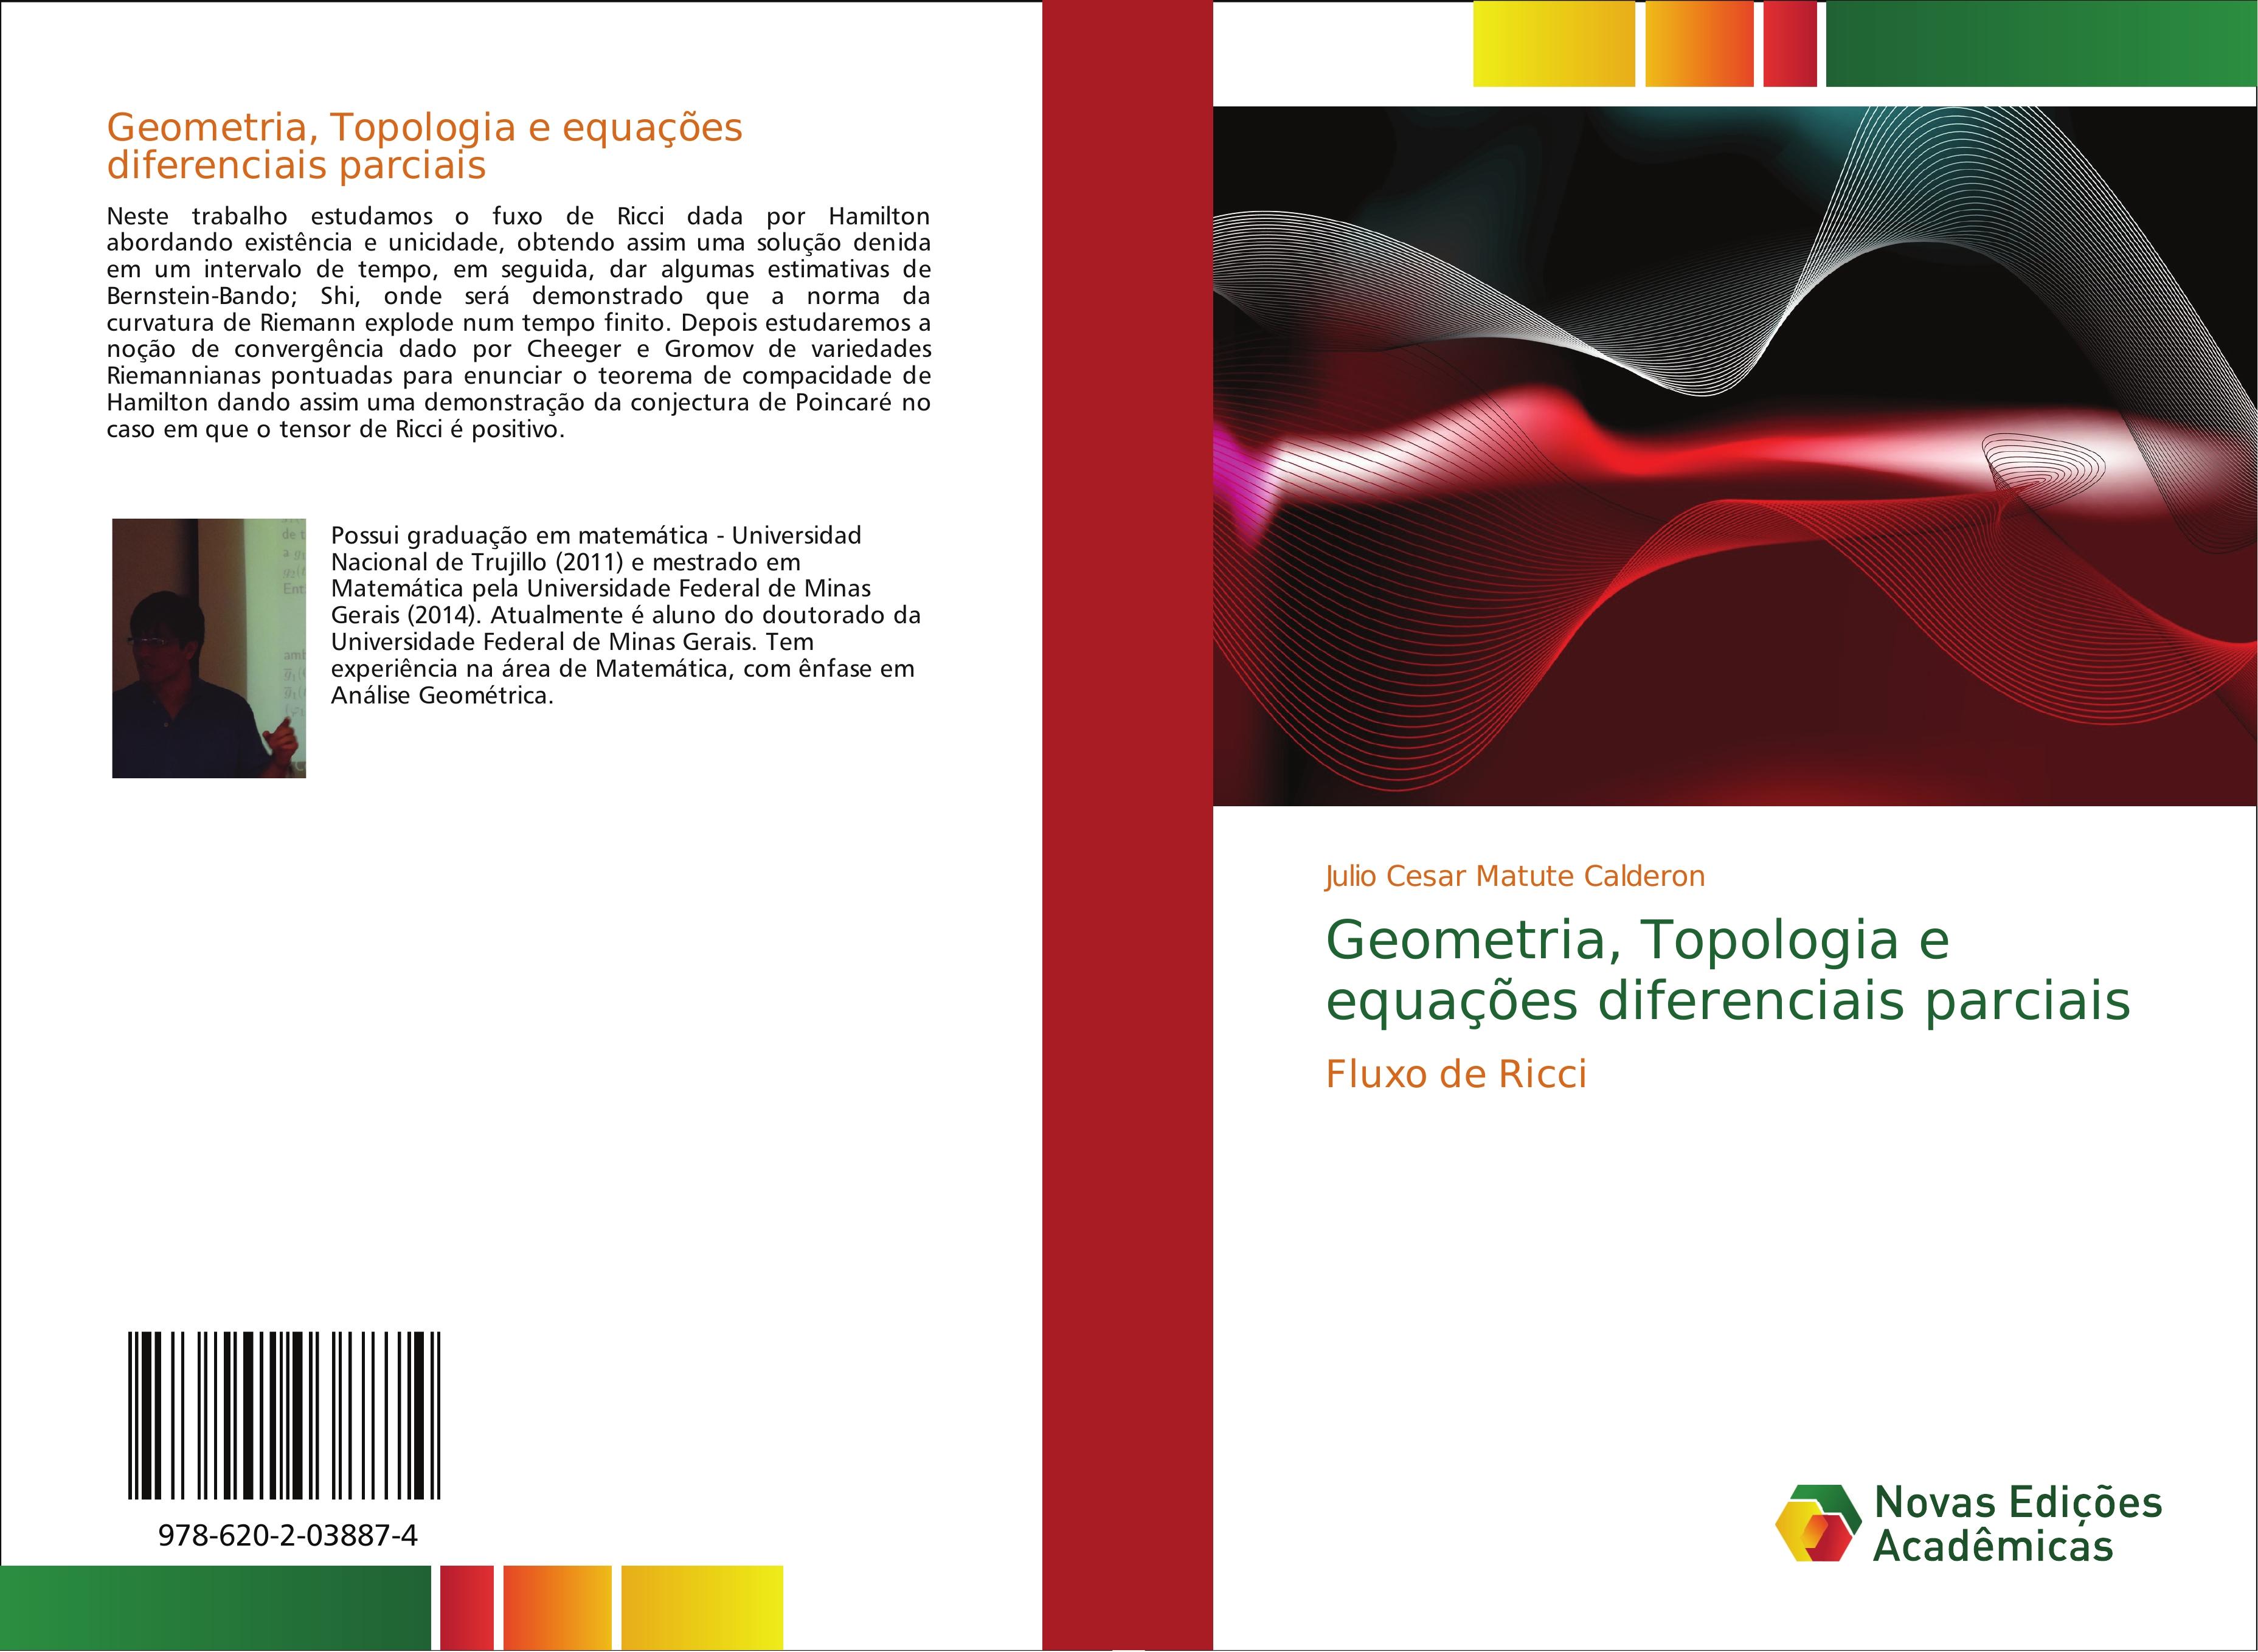 Geometria, Topologia e equações diferenciais parciais - Julio Cesar Matute Calderon